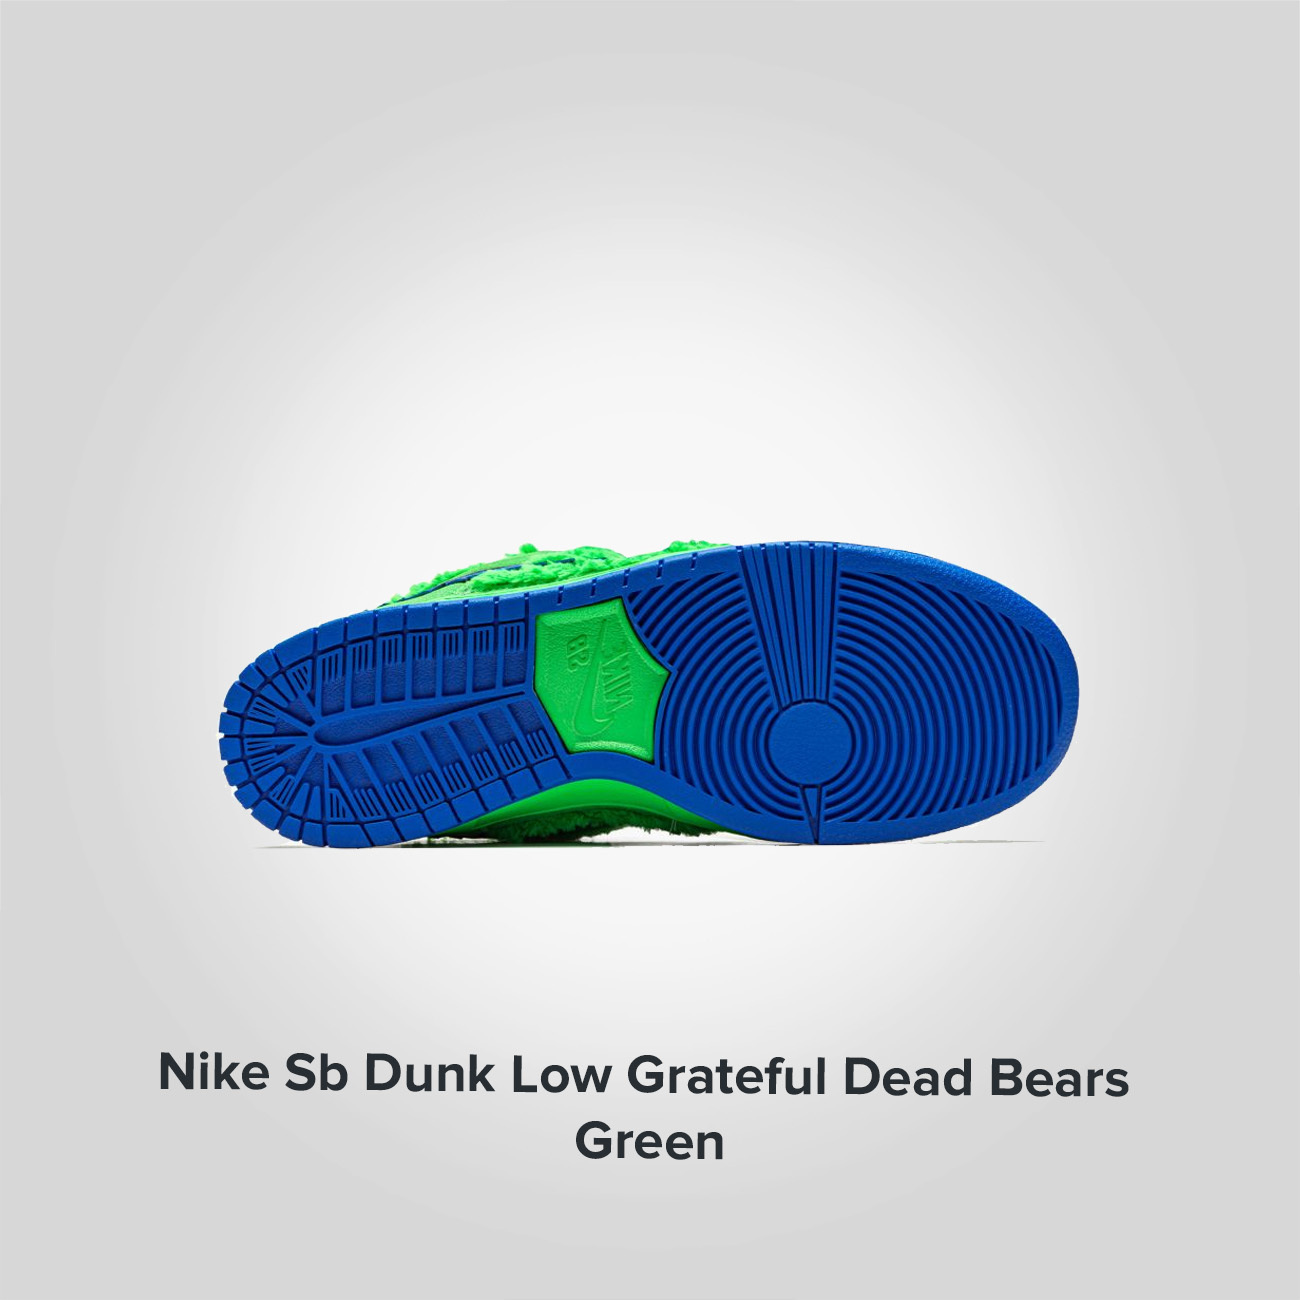 Nike SB Dunk Low Grateful Dead Bears Green